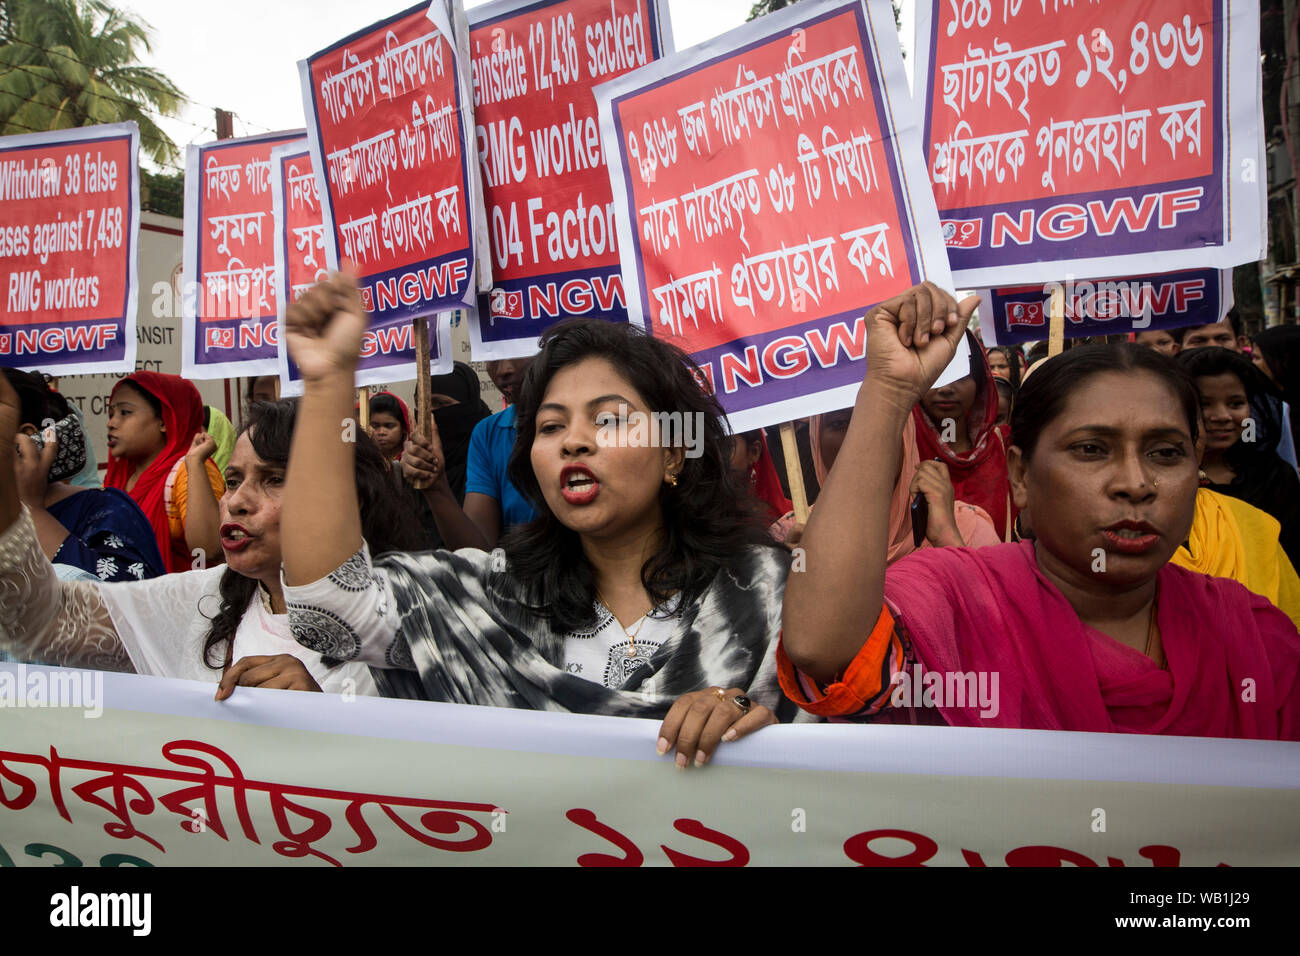 DHAKA, BANGLADESCH - 23. August: Bangladesch kleider Arbeiter protestieren auf 25 falsche Argument gegen RMG-Arbeiter in Dhaka, Bangladesch am 23. August, 2 zurückziehen Stockfoto